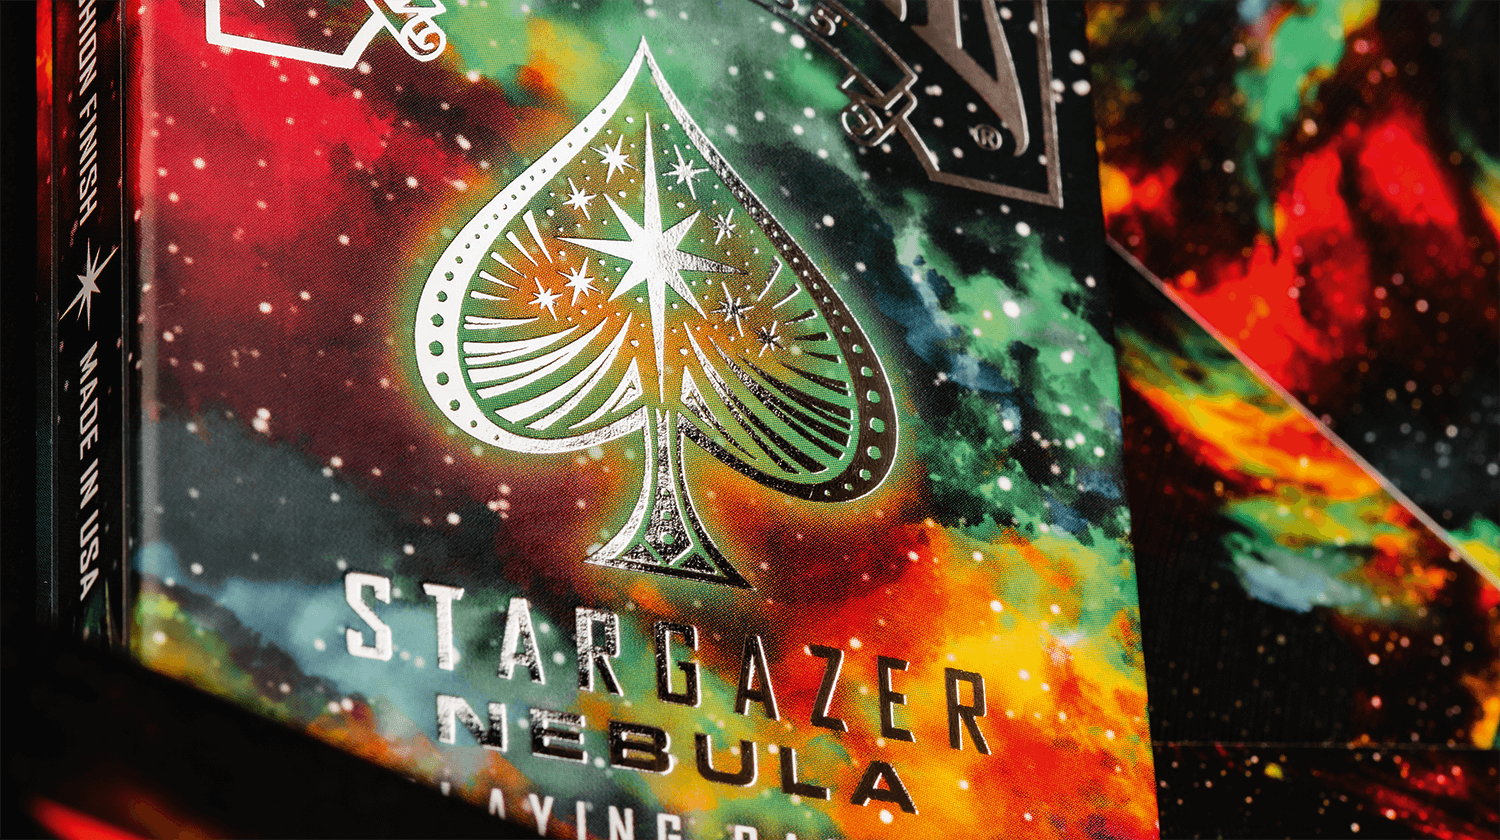 Zusehen ist eine Bicycle Creatives Kartenschachtel von Stargazer Nebula in einer nahen Ansicht in der man die Veredelung mit Folie erkennen kann, im Hintergrund sieht man die Rückseiten der Karten.